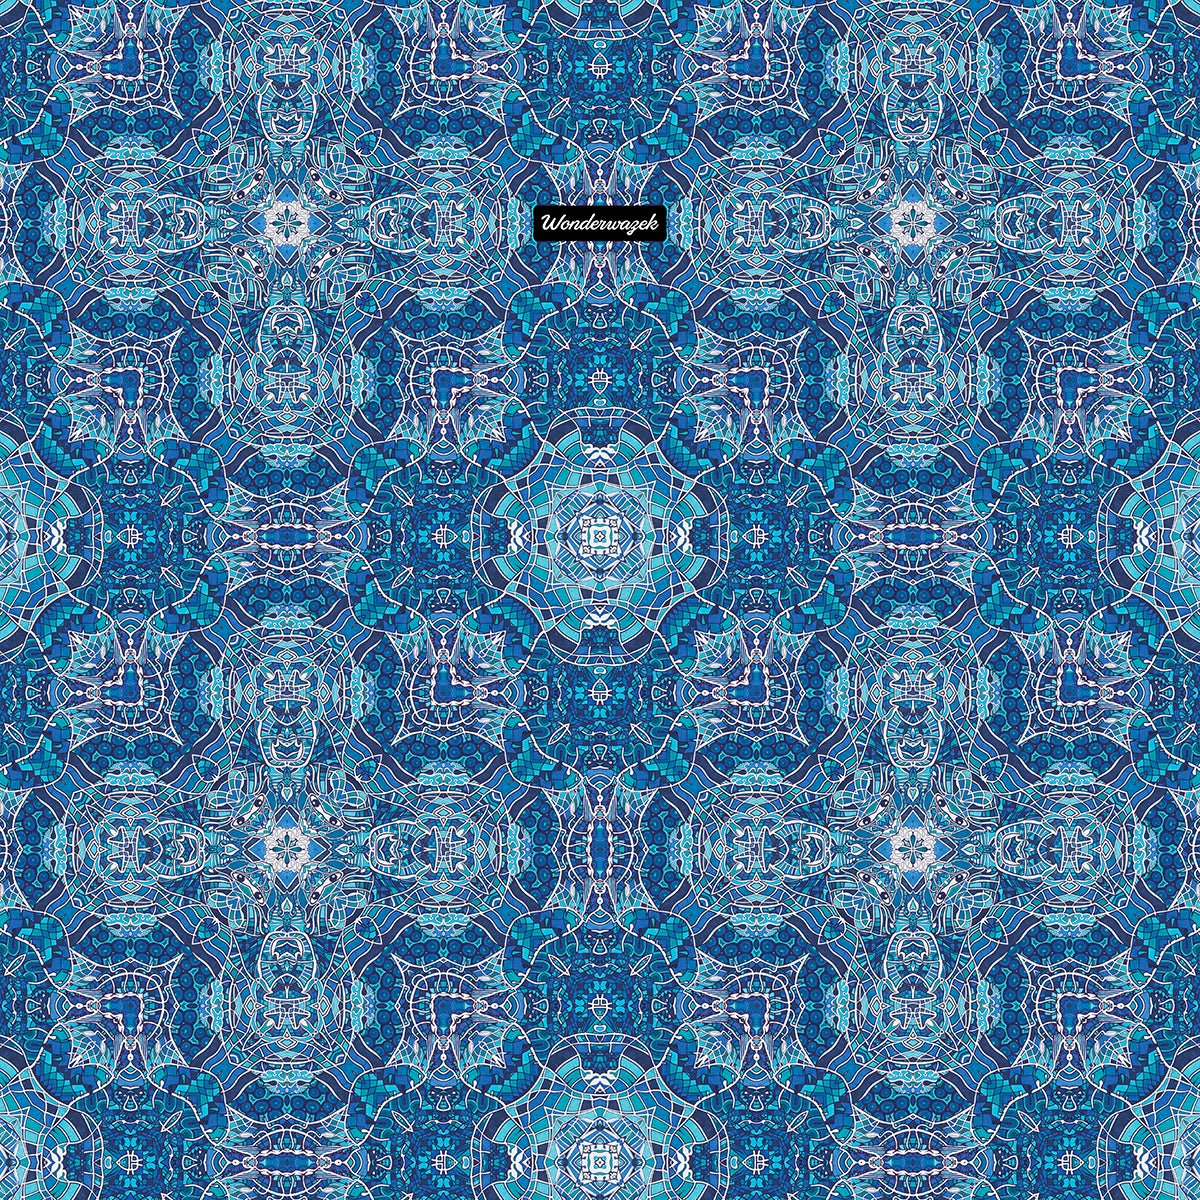 Badetuch • Wassergeister – Kaleidoskop 1, blau, weiß - Wonderwazek